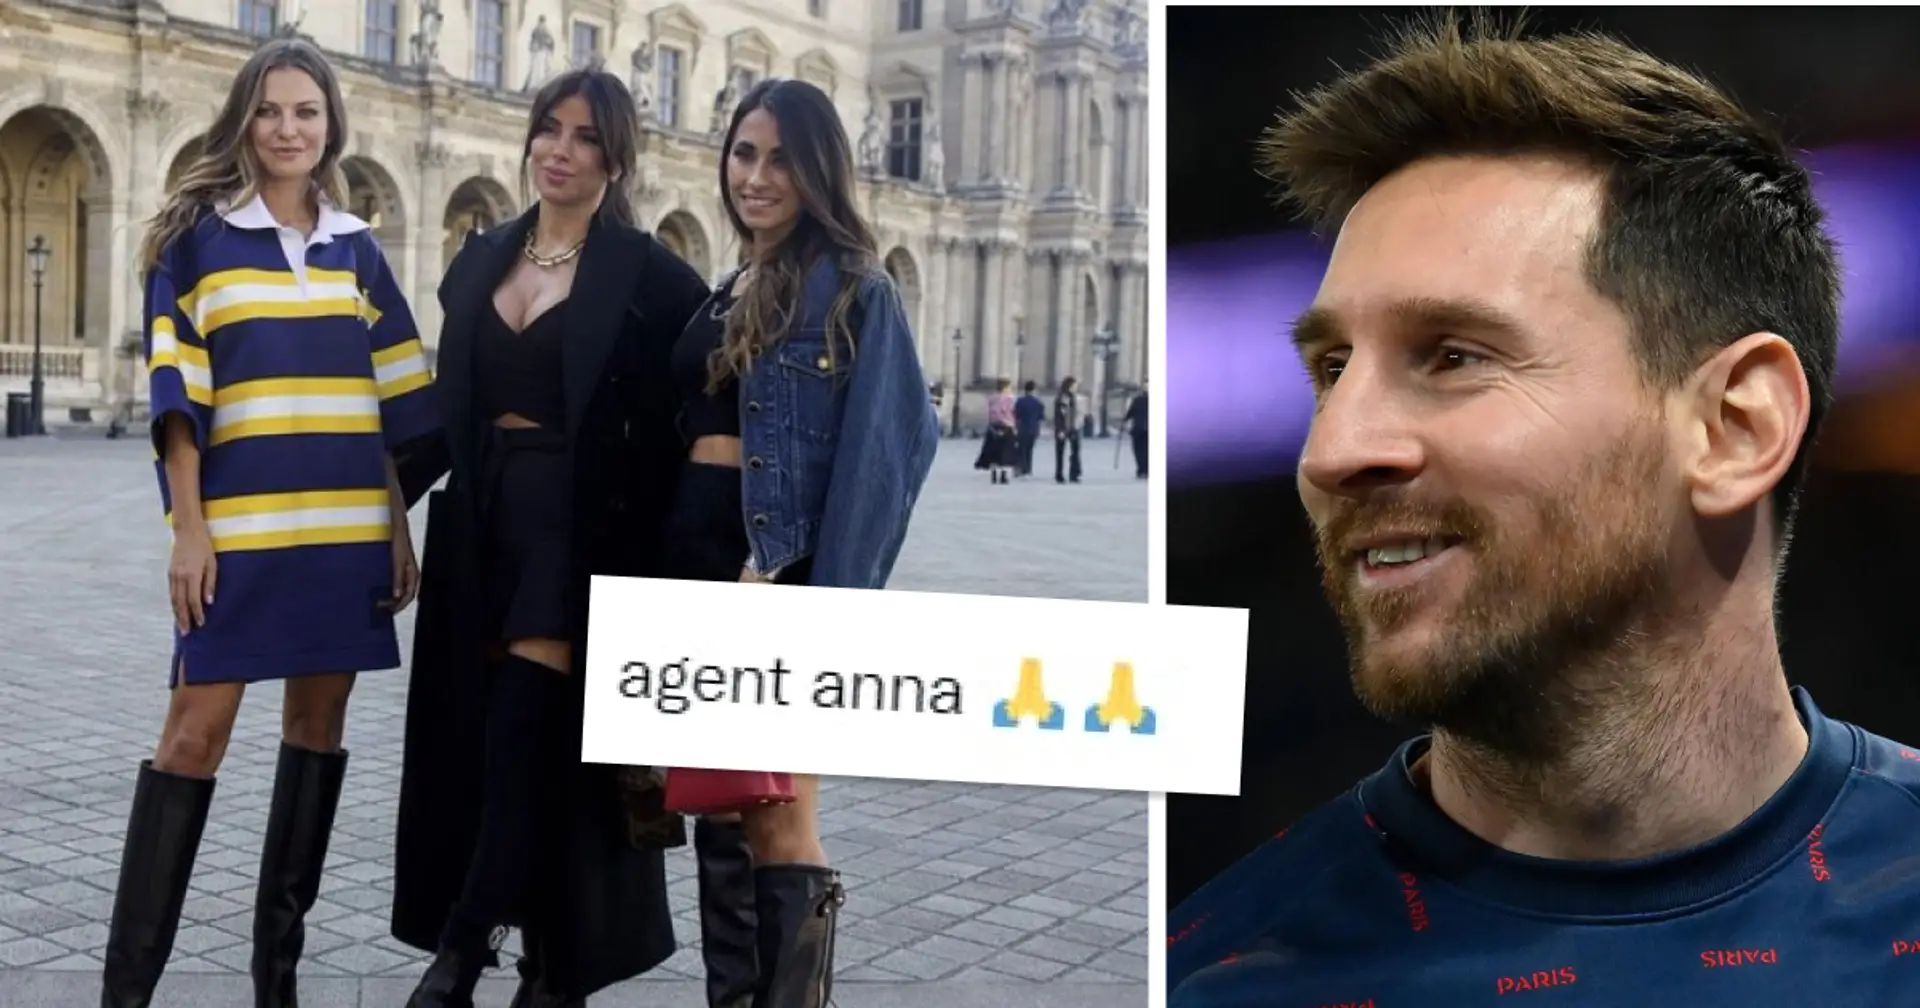 "Messi au Barça, c'est confirmé" - les fans réagissent alors que la femme de Lewandowski est repérée accompagnée d'Antonella